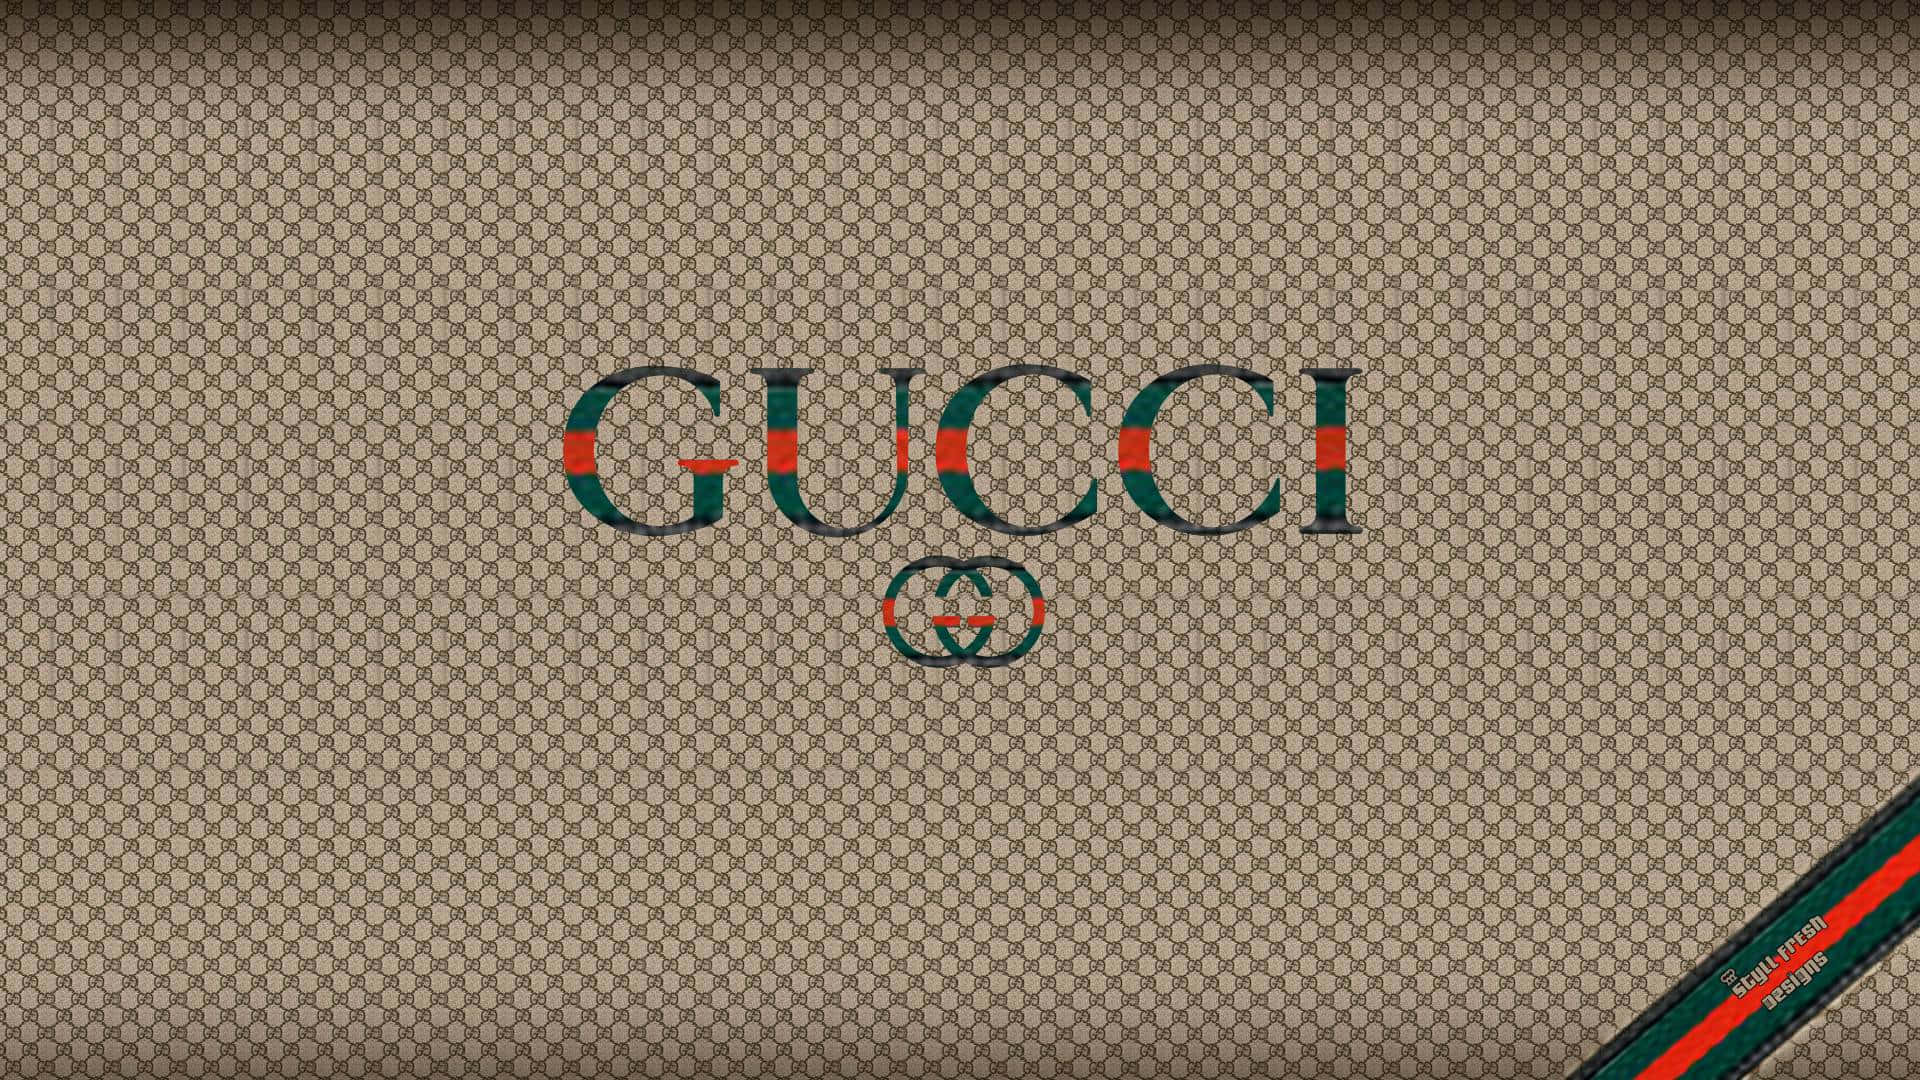 Attraktivbaggrund Med Gucci-logo I Grønne Og Orange Farver.